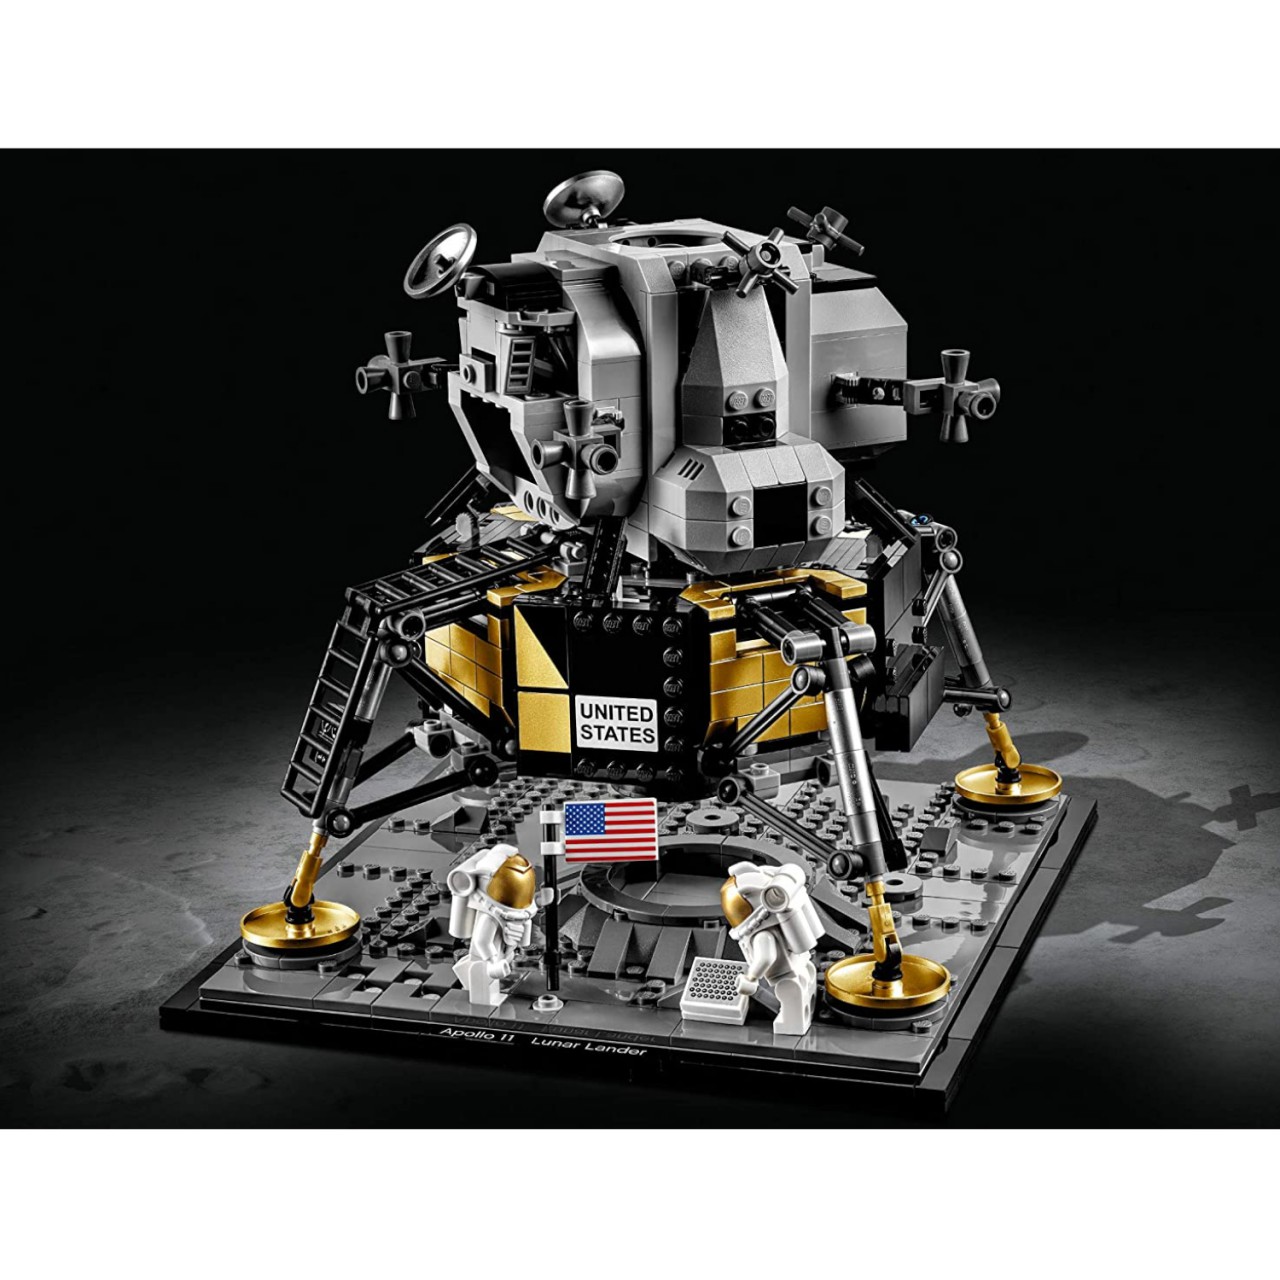 Lego Creator Expert 10266 NASA Apollo 11 Mondlandefähre